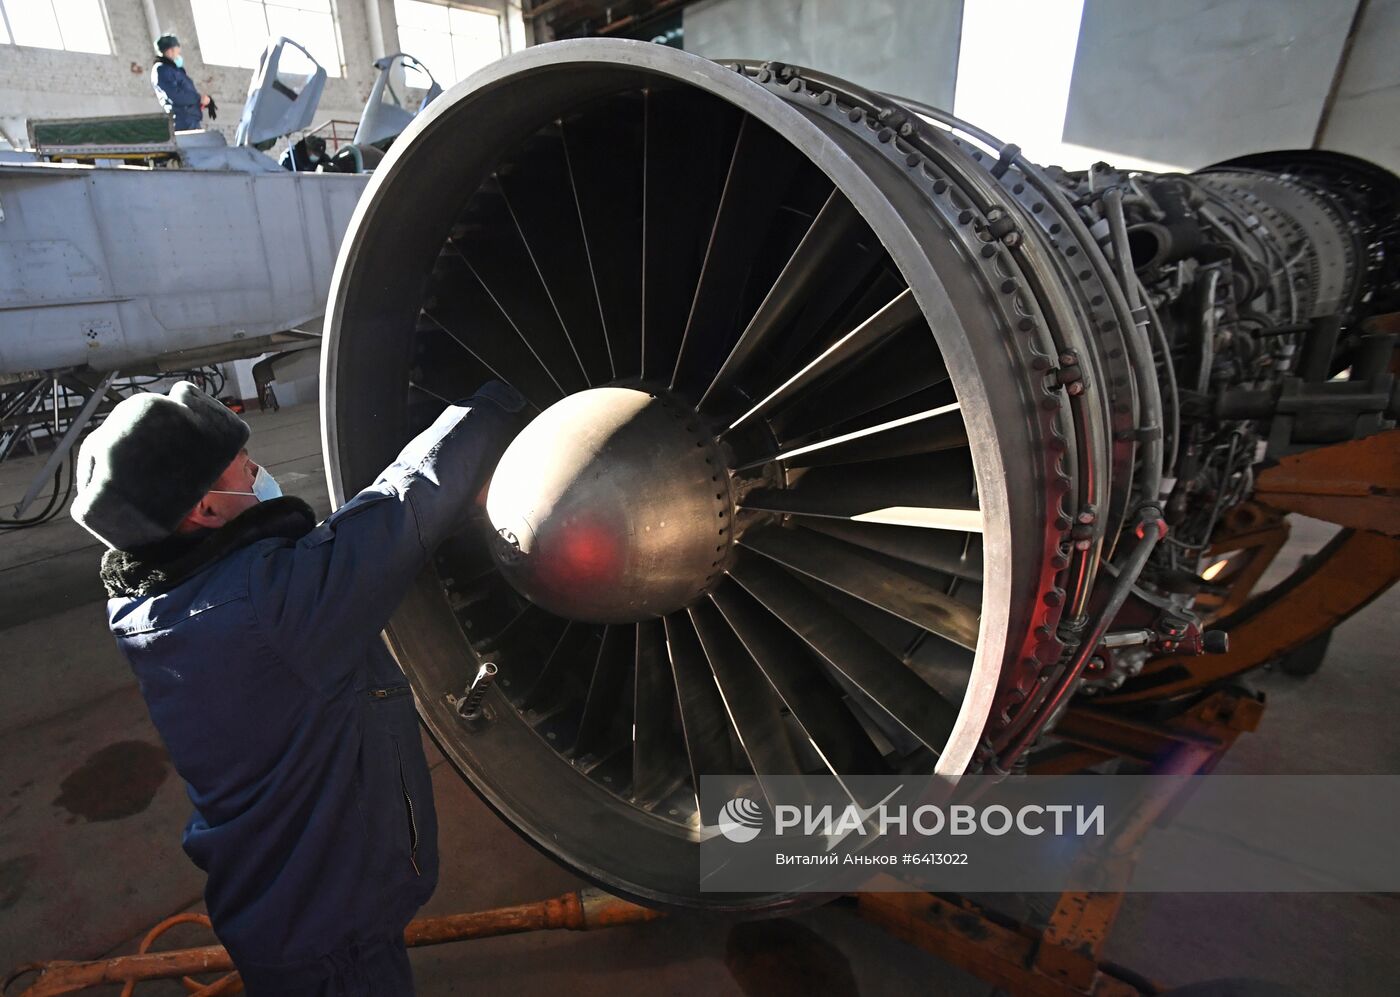 Работа специалистов авиационной инженерной службы в Приморье